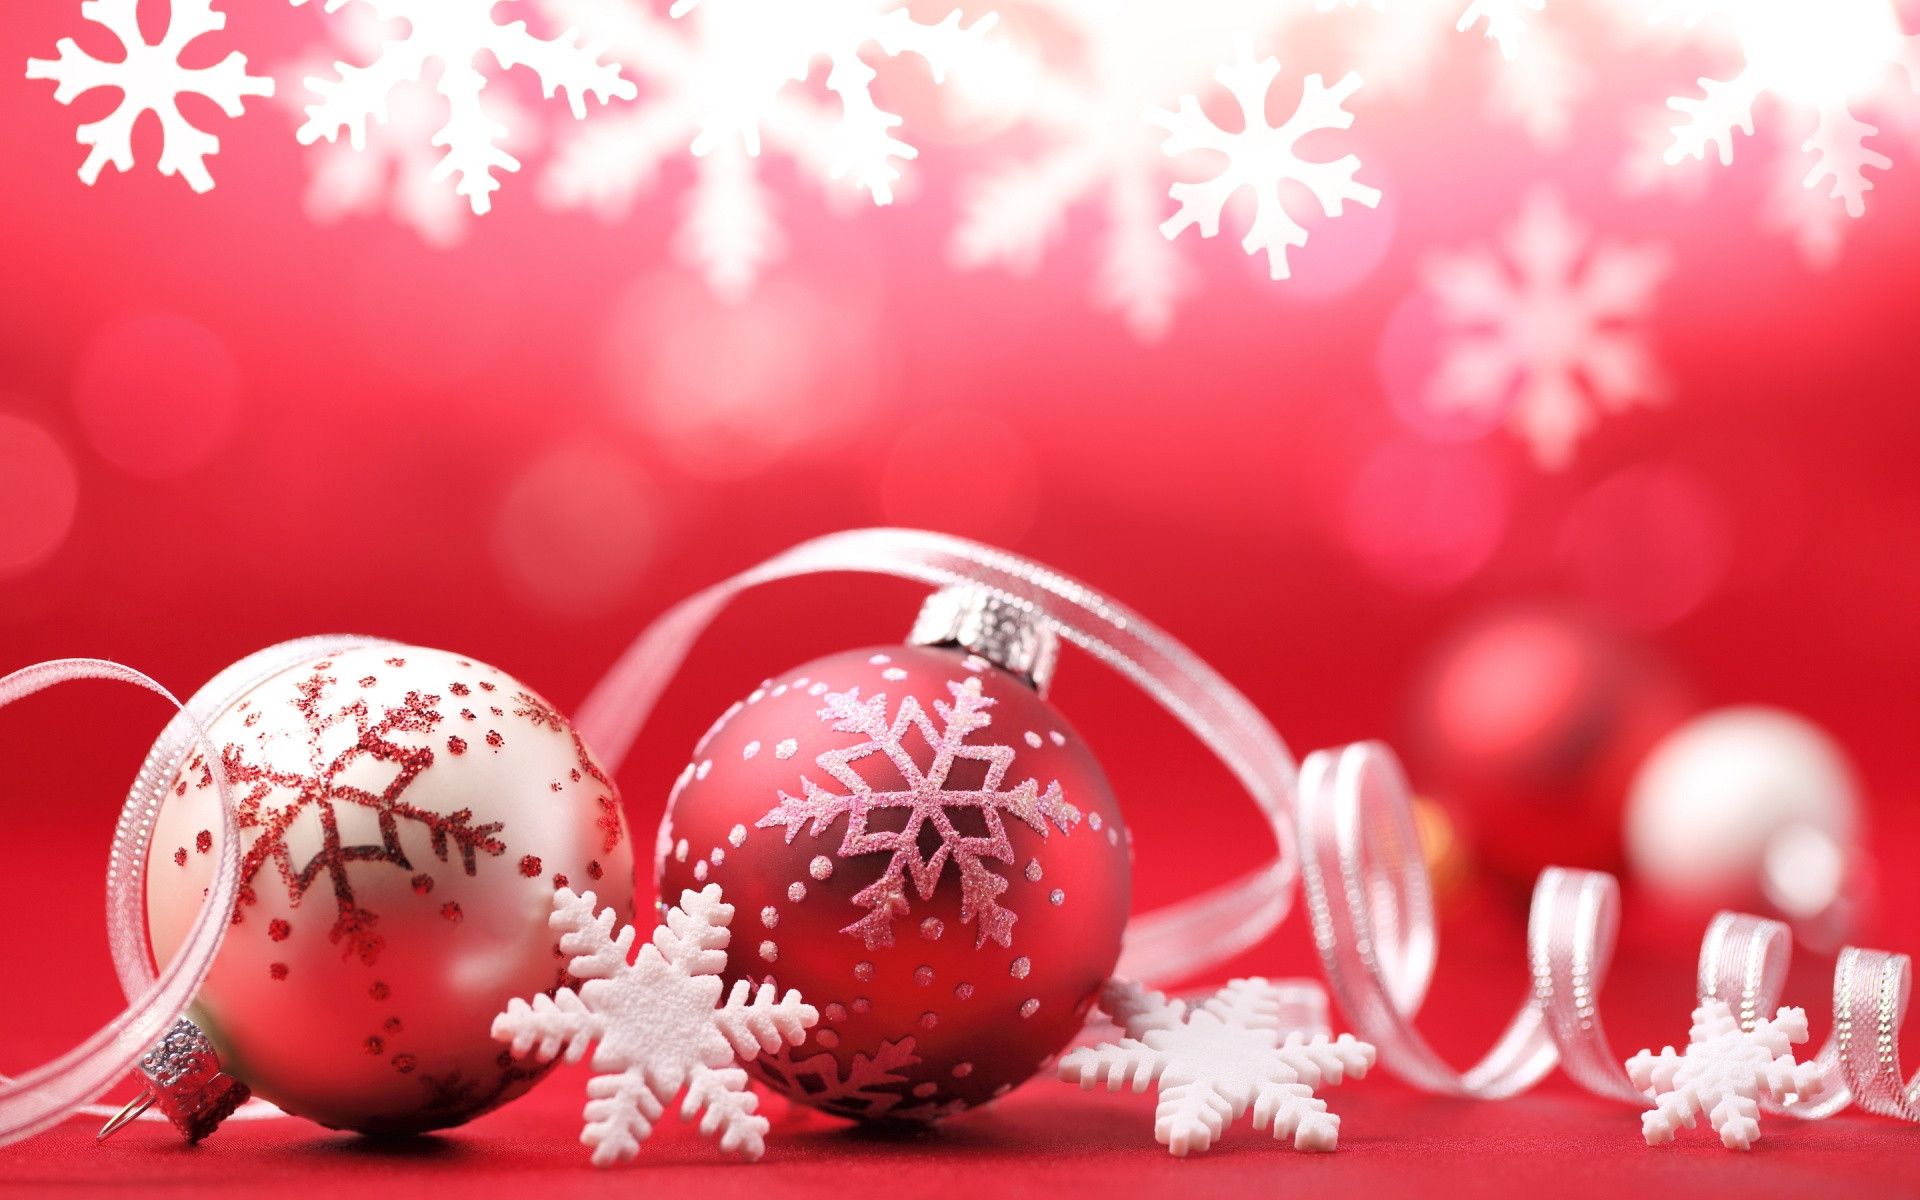 4000 Free Christmas Ornaments  Christmas Images  Pixabay